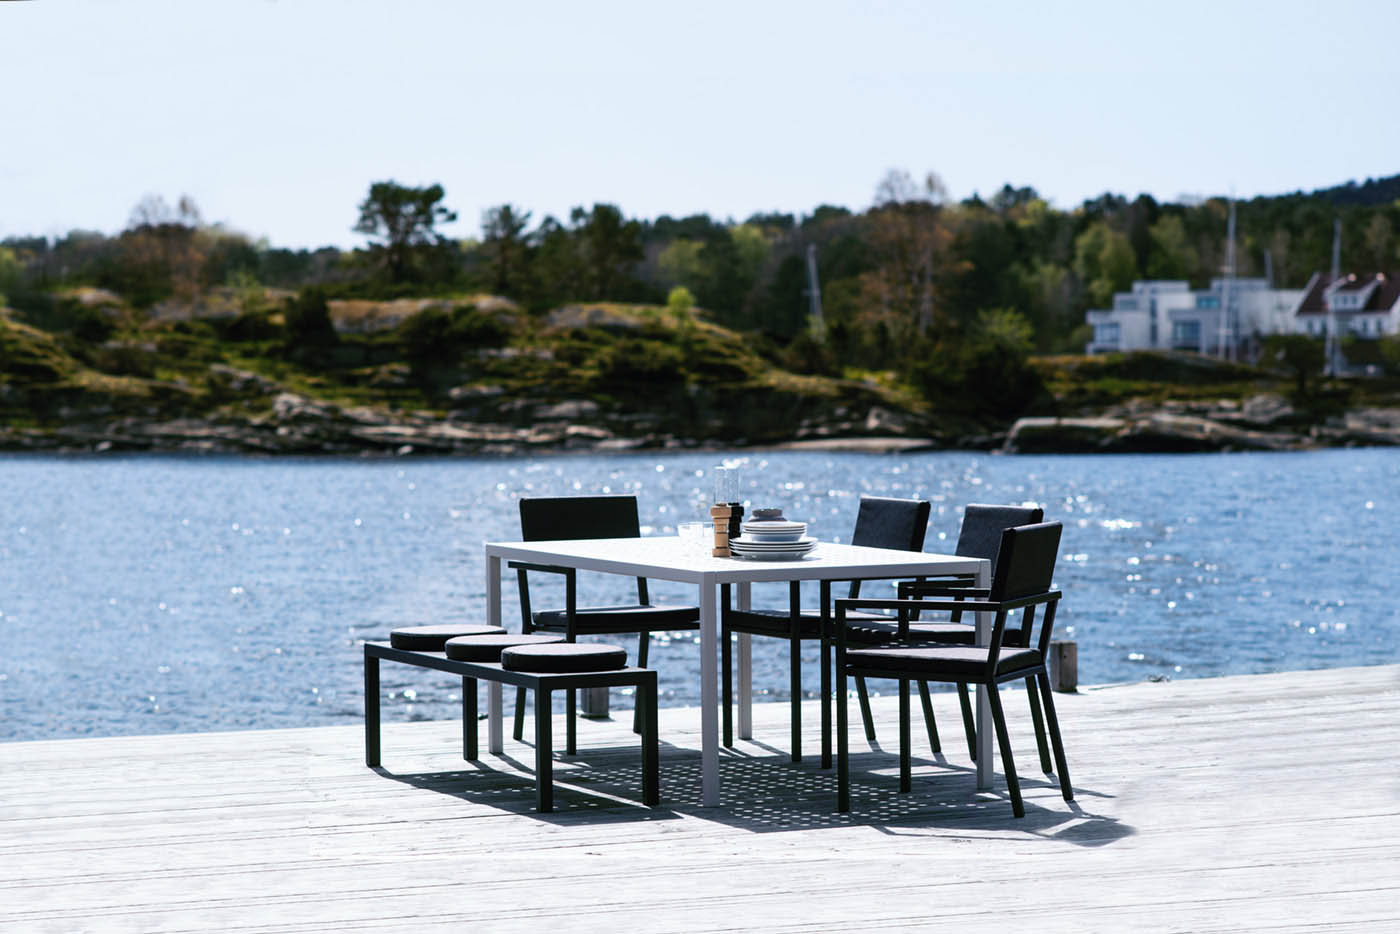 Sundays Design hagemøbler i strålende solskinn med en glitrende sjø i bakgrunnen